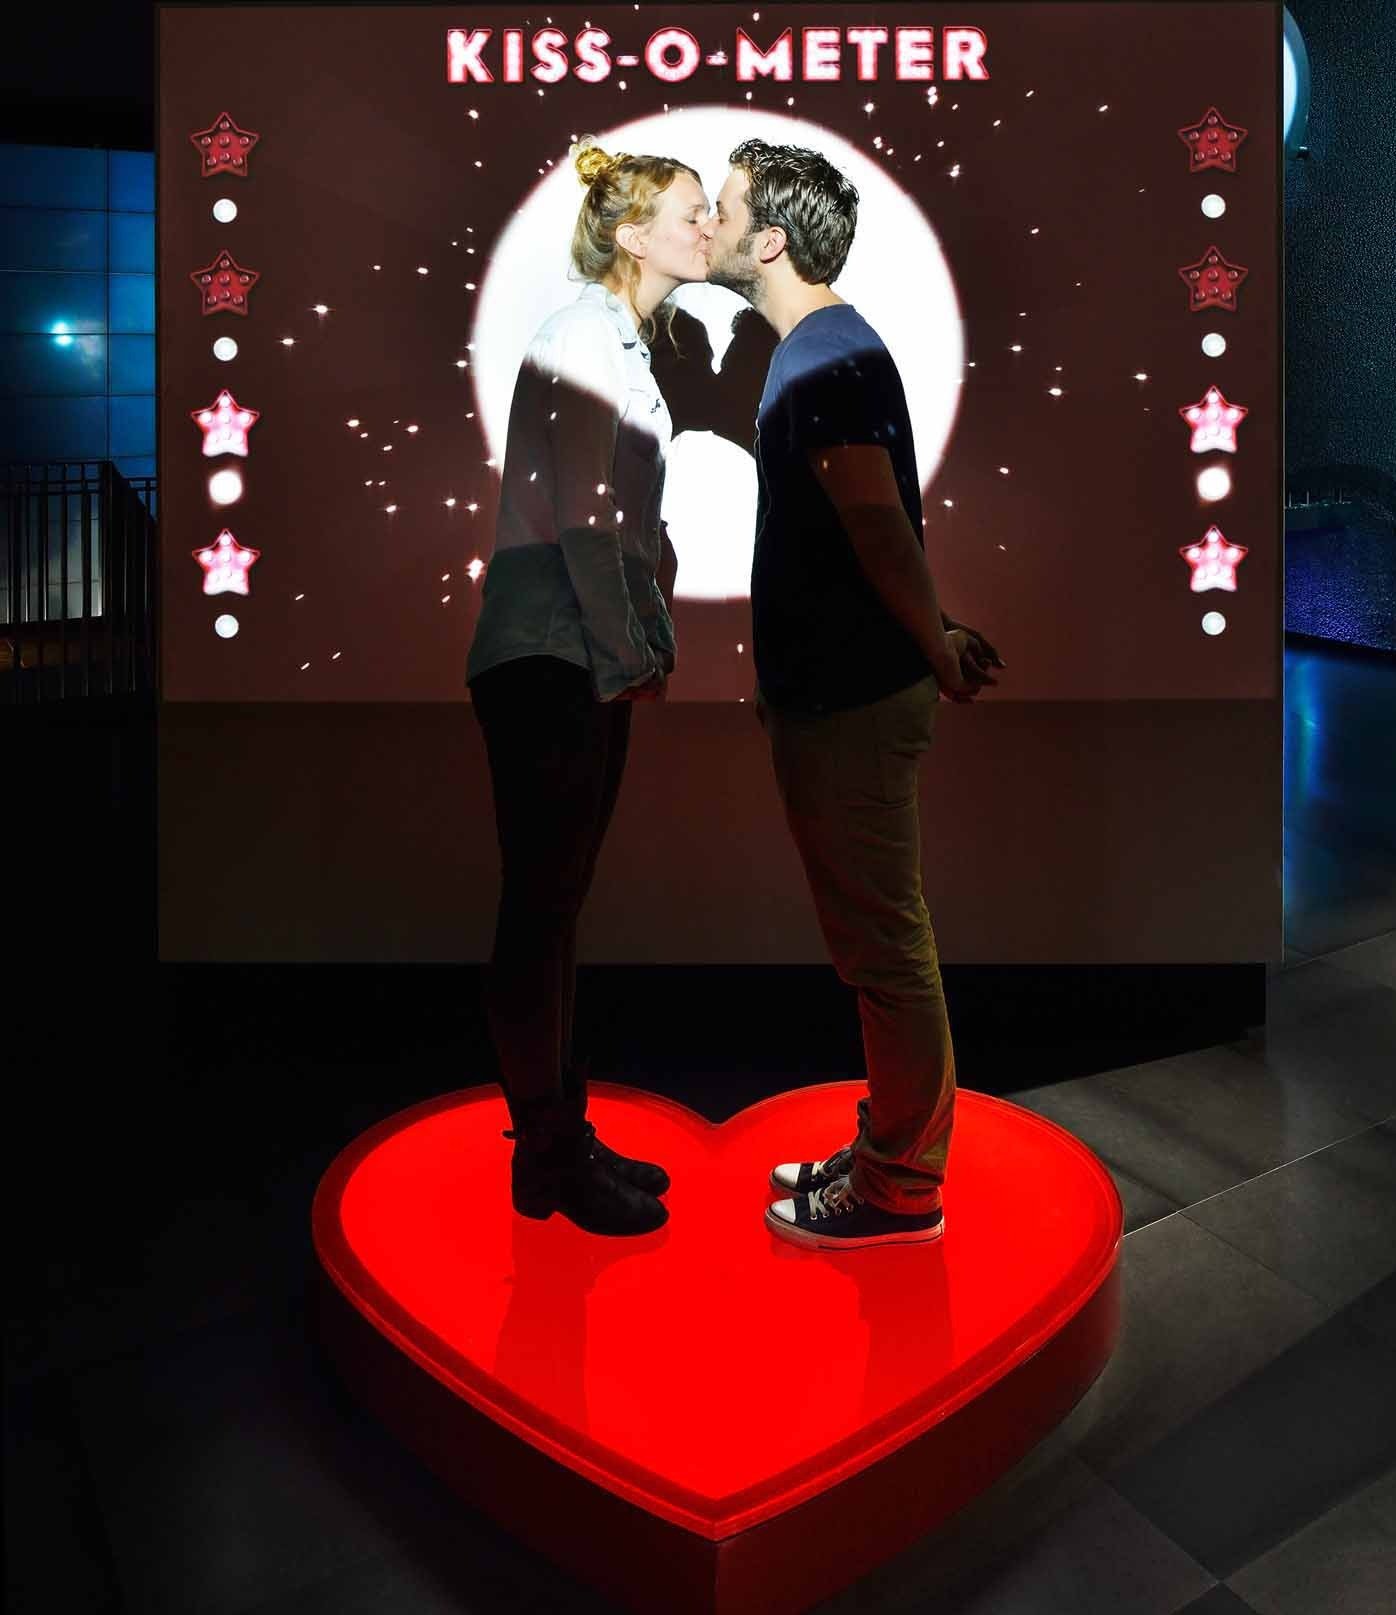 Das Kiss-o-Meter im Amsterdamer Mikroben-Museum Micropia ist ein Higlight der Ausstellung. Pärchen treten in das Herz auf dem Boden, um sich zu küssen. Auf dem Bildschirm beginnen dann die Zahlen zu rattern, um das Ergebnis zu verkünden: 